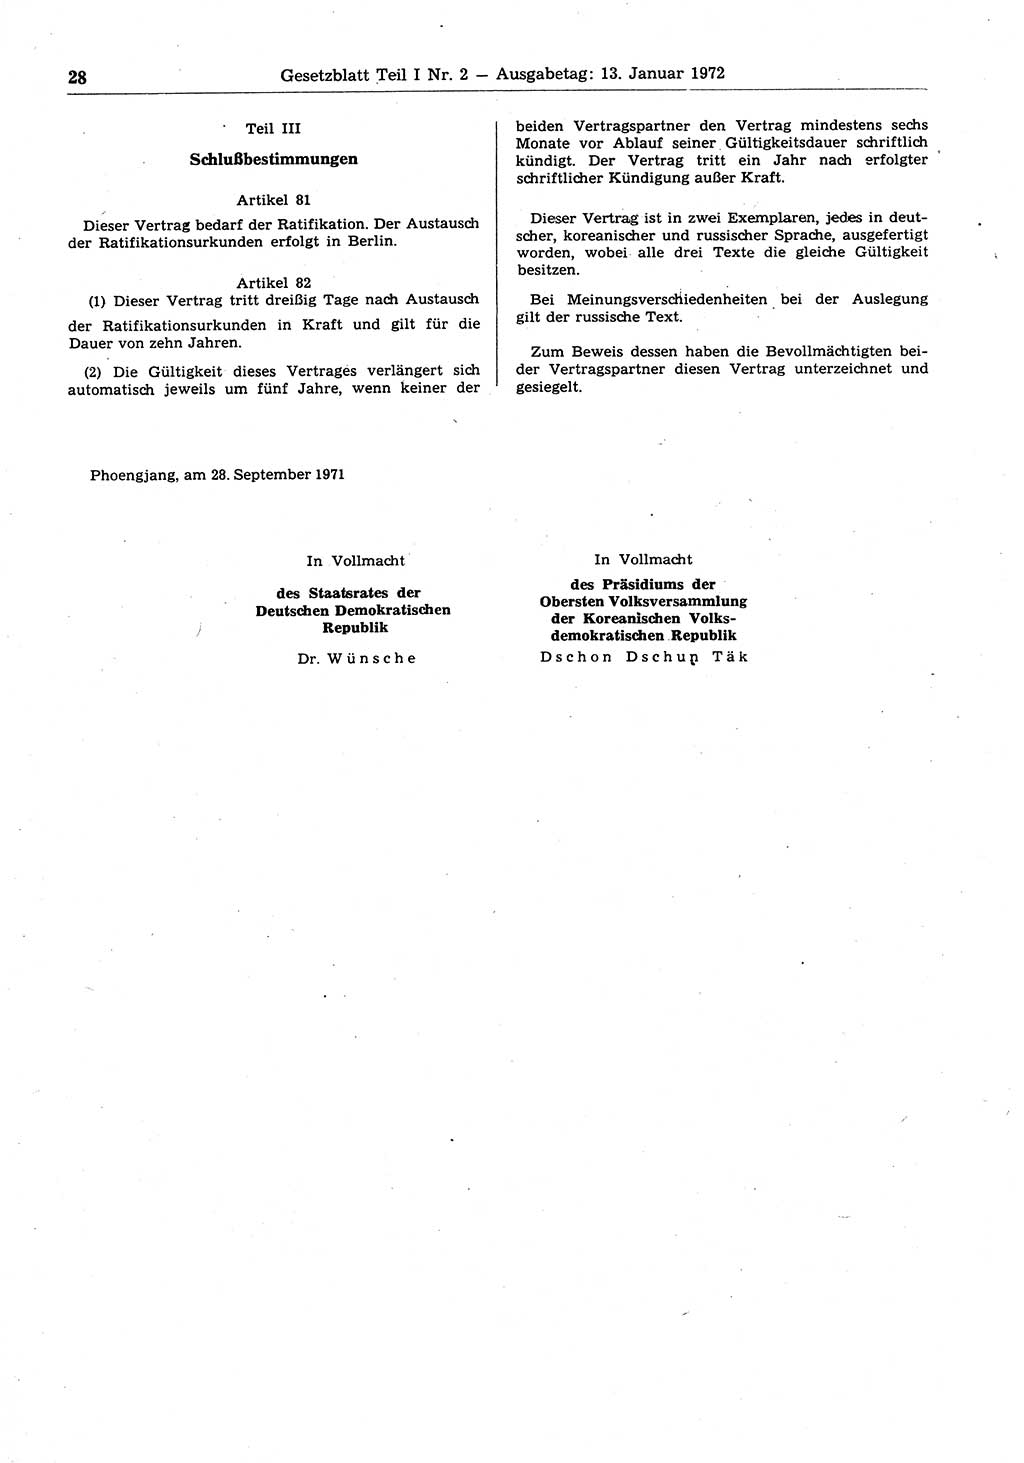 Gesetzblatt (GBl.) der Deutschen Demokratischen Republik (DDR) Teil Ⅰ 1972, Seite 28 (GBl. DDR Ⅰ 1972, S. 28)